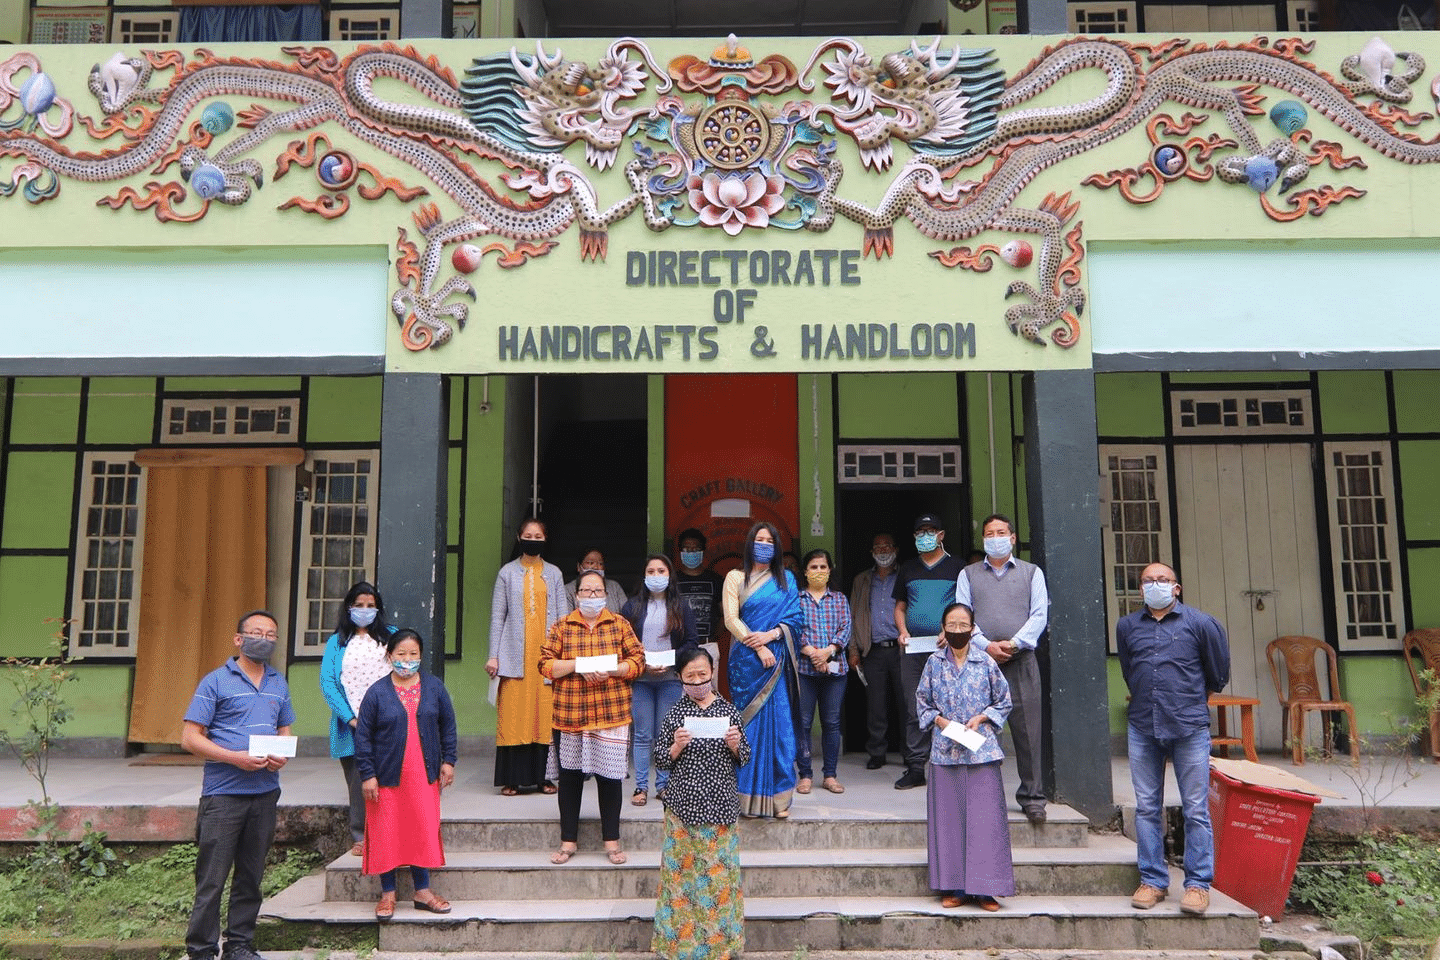 Directorate of Handicrafts & Handloom